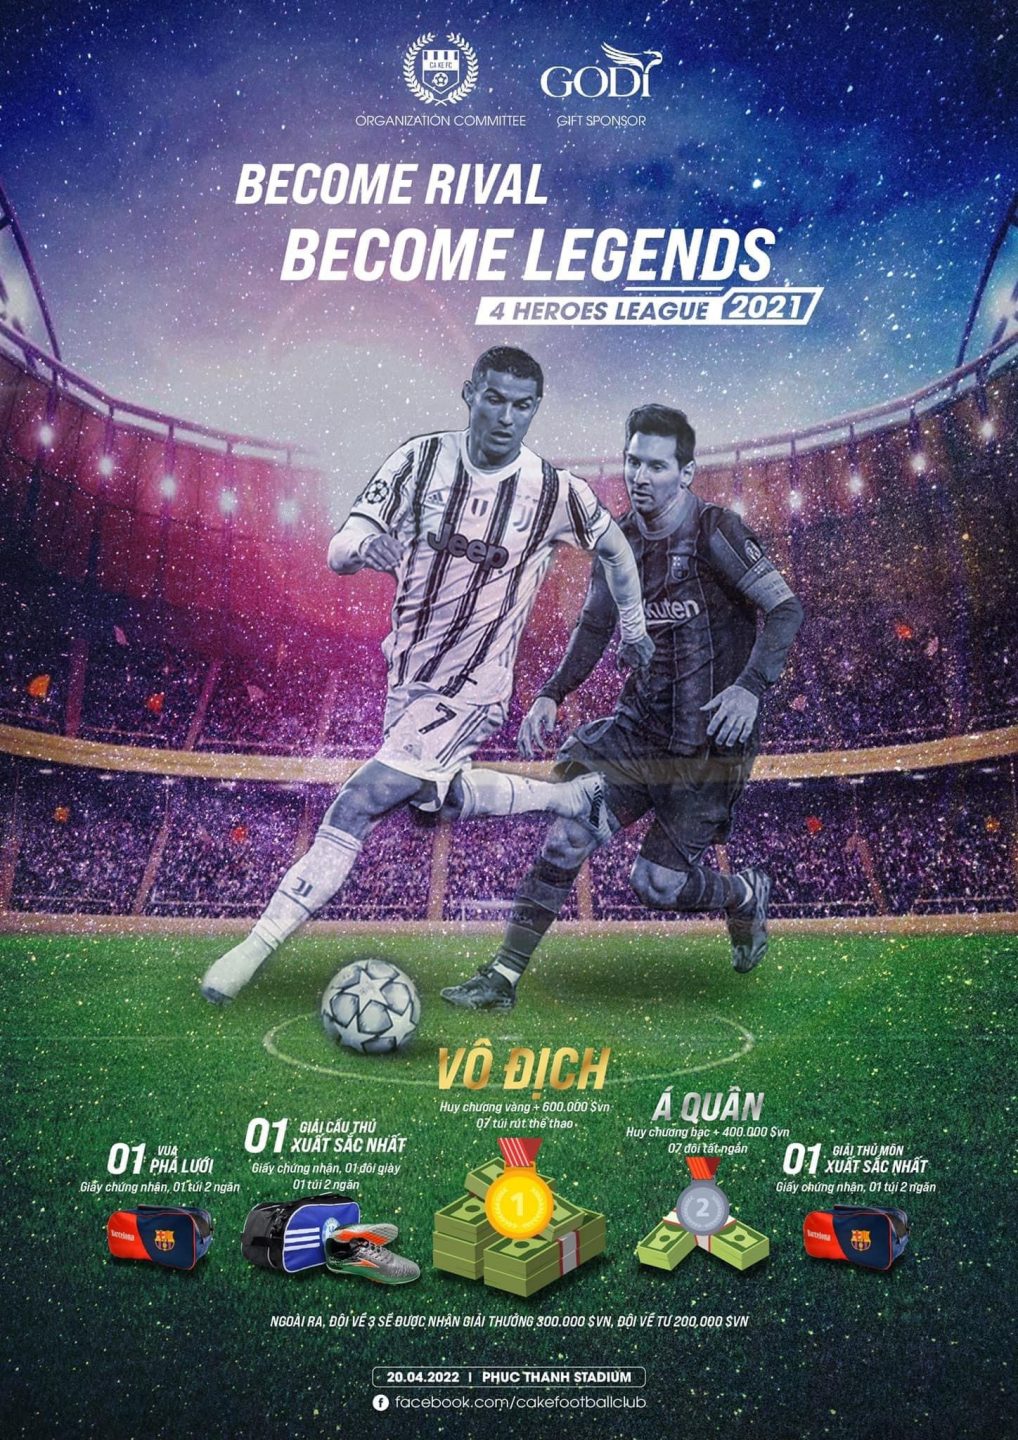 GODI Sport Hân Hạnh Trở Thành Nhà Tài Trợ Chính Cho Giải Đấu 4 Heroes League : Become Rival - Become Legends 